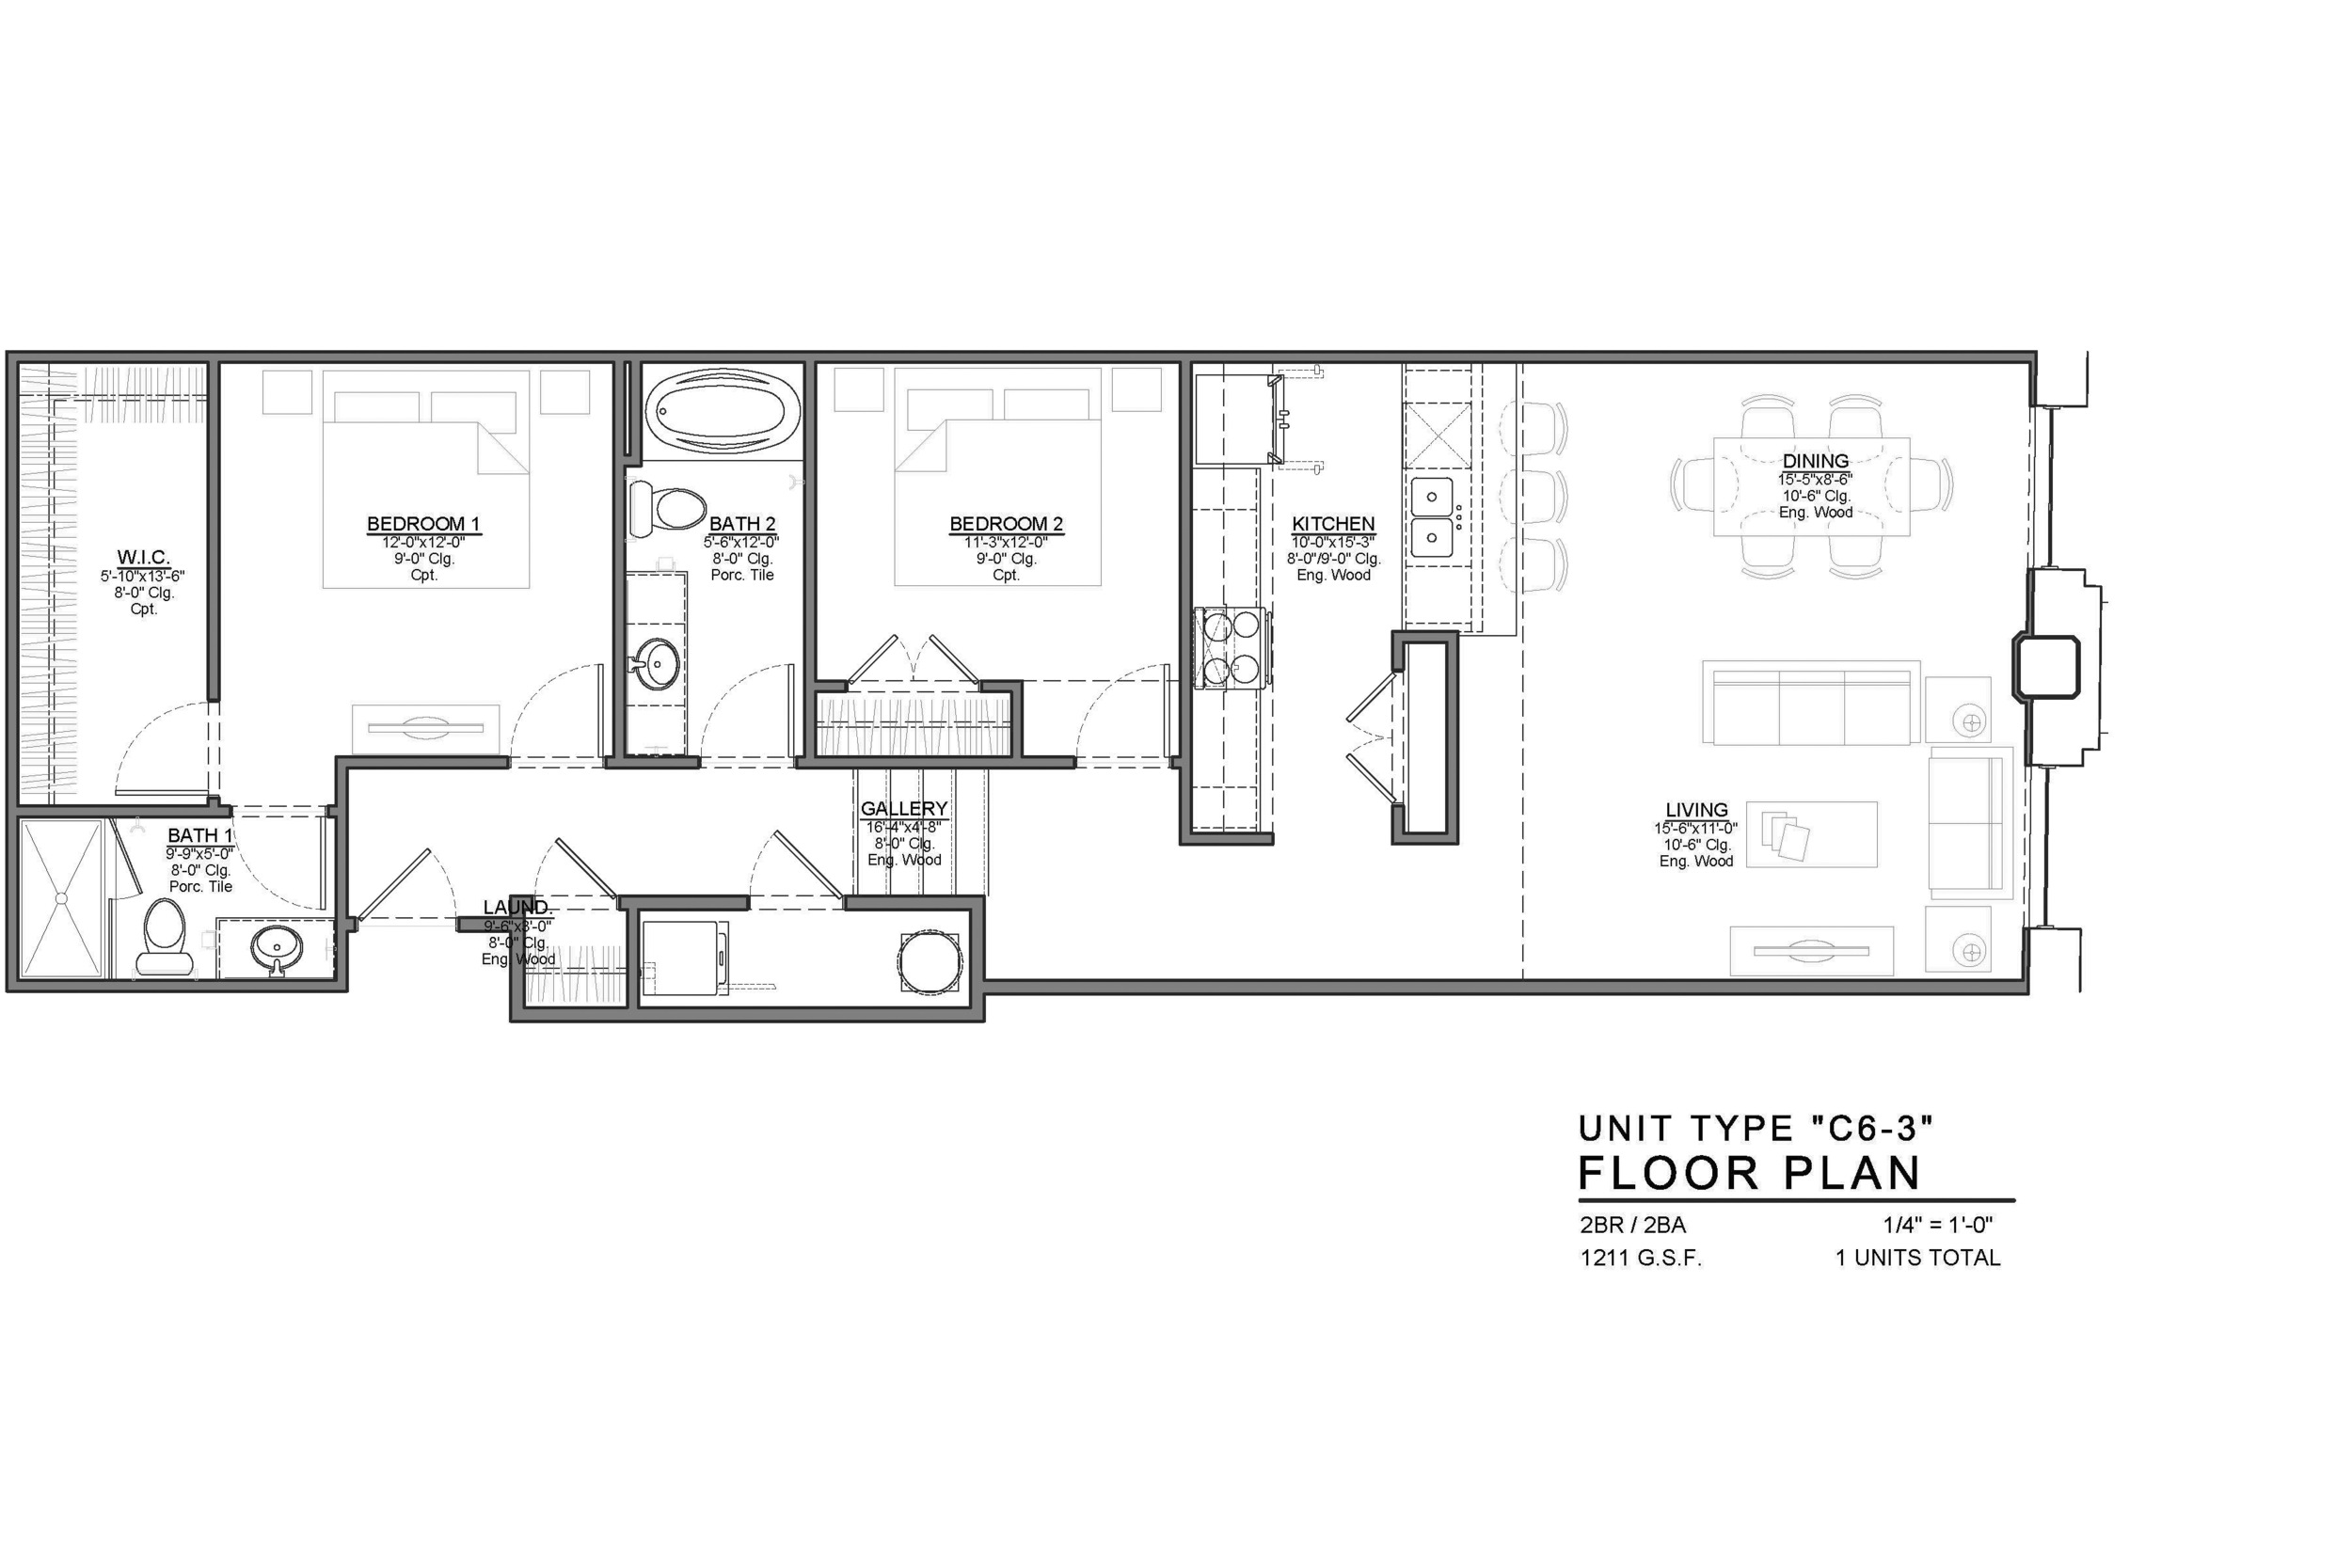 C6-3 FLOOR PLAN: 2 BEDROOM / 2 BATH